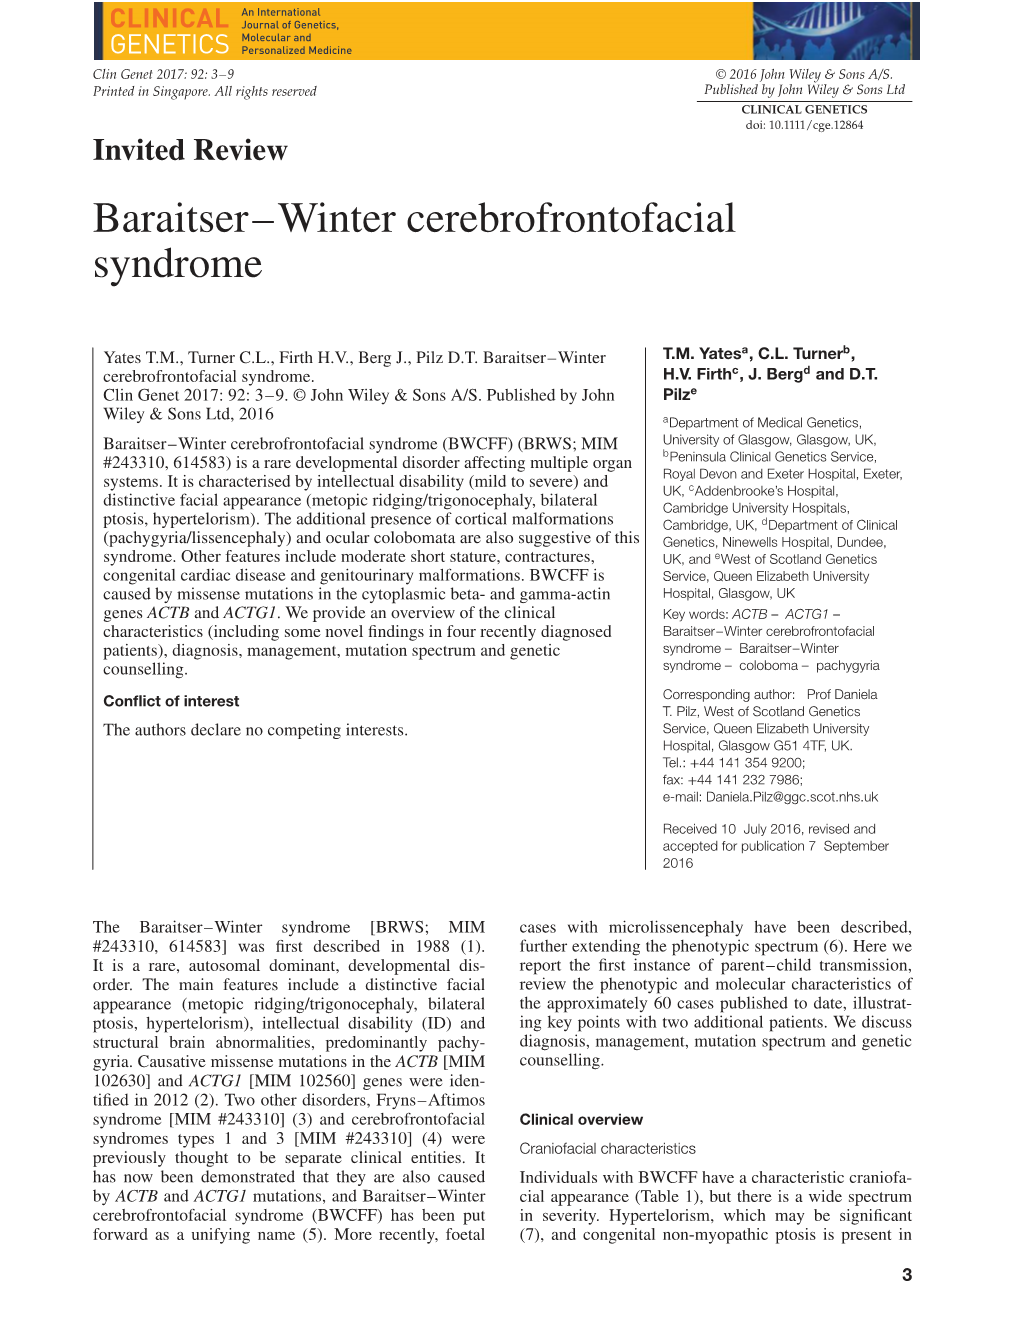 Baraitser–Winter Cerebrofrontofacial Syndrome